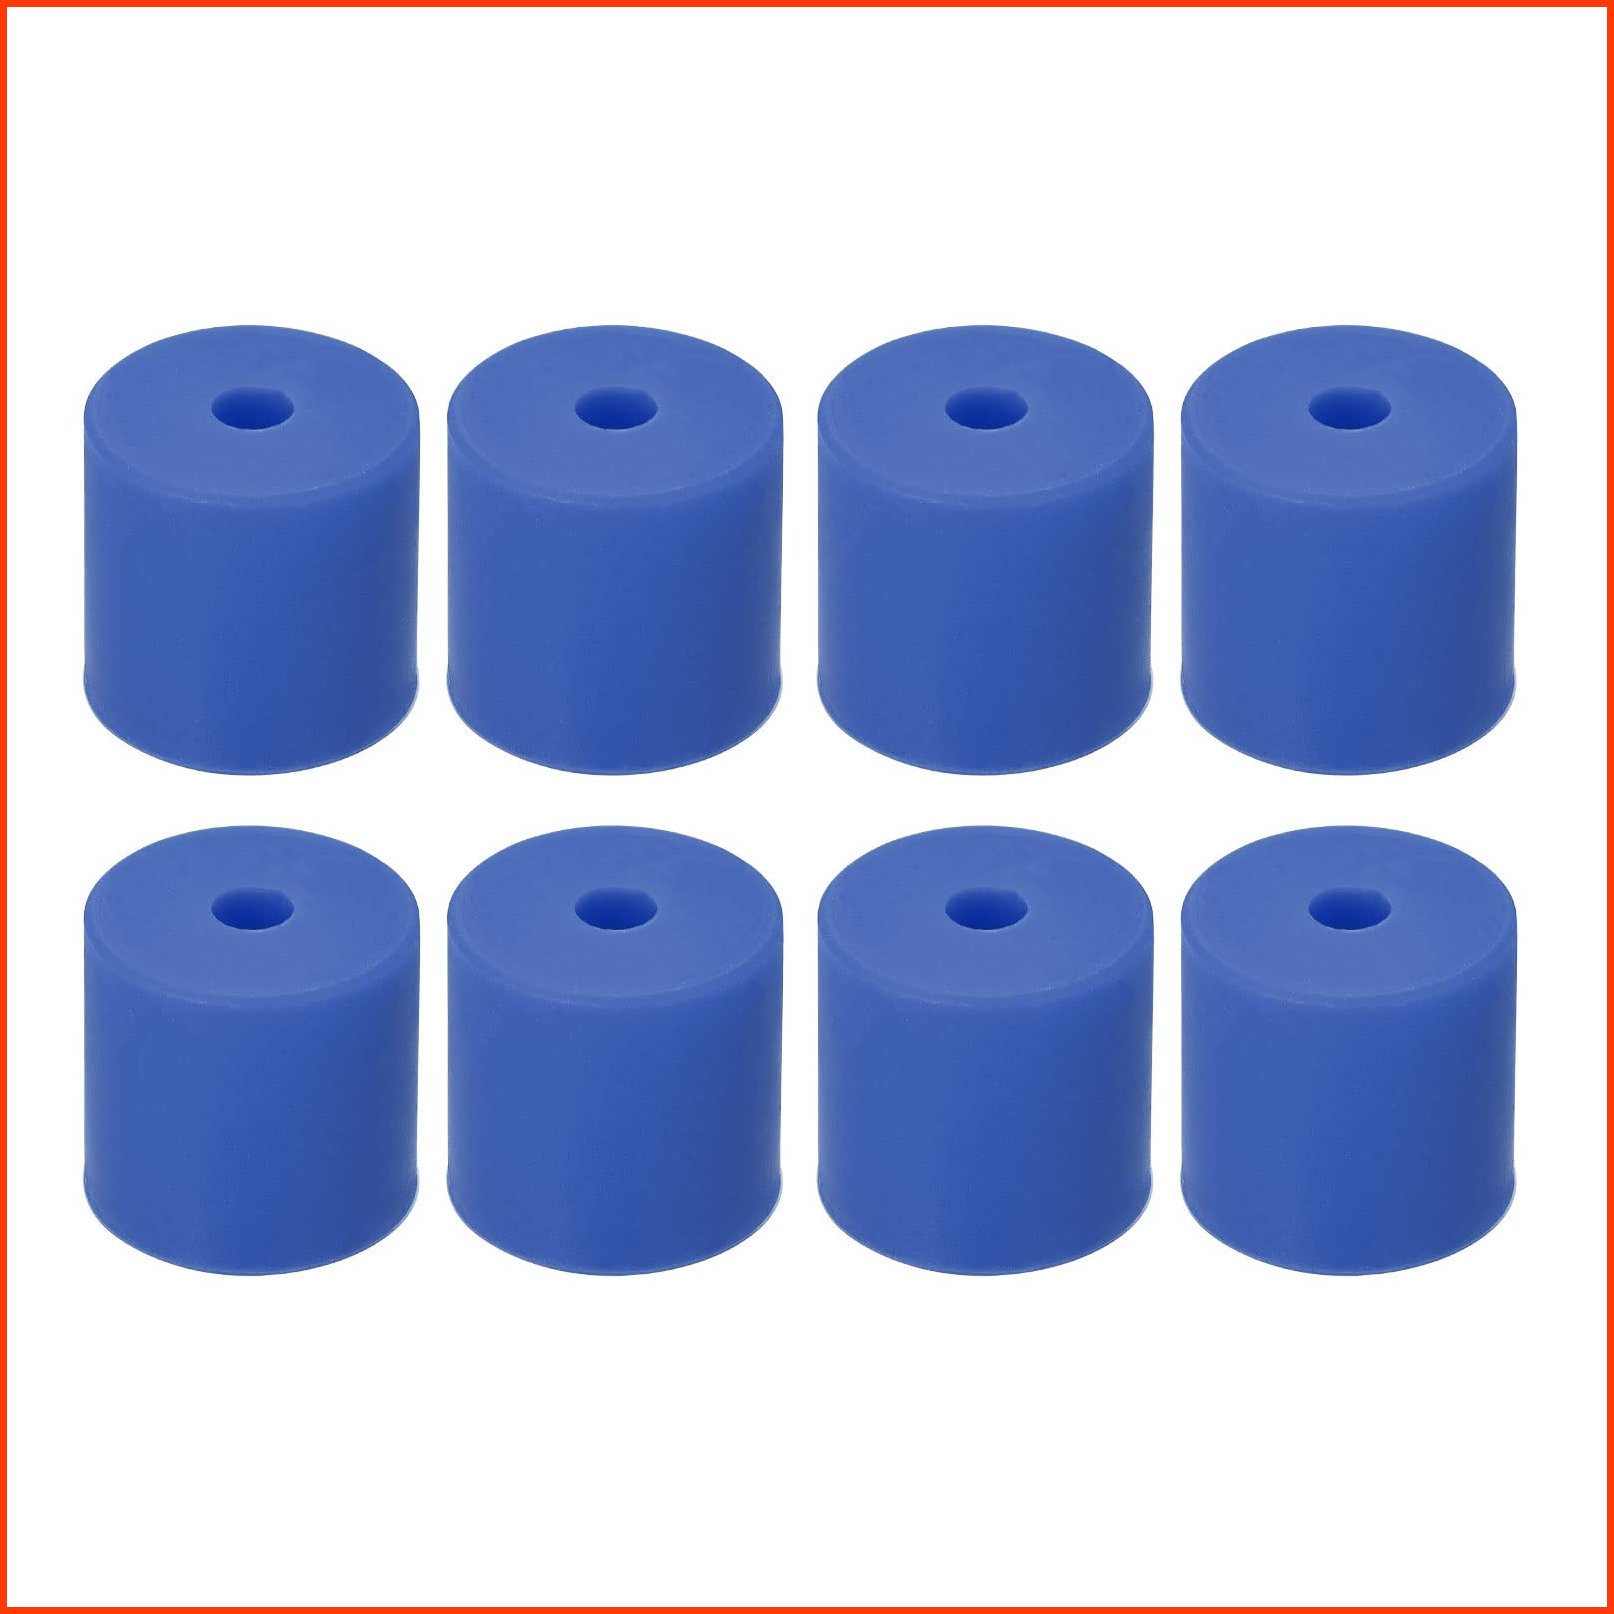 並行輸入品MECCANIXITY Silicone Leveling Column Silicone Buffer 16mm Blue Heat-Resistant for 3D Printer Hot Bed 8pcs